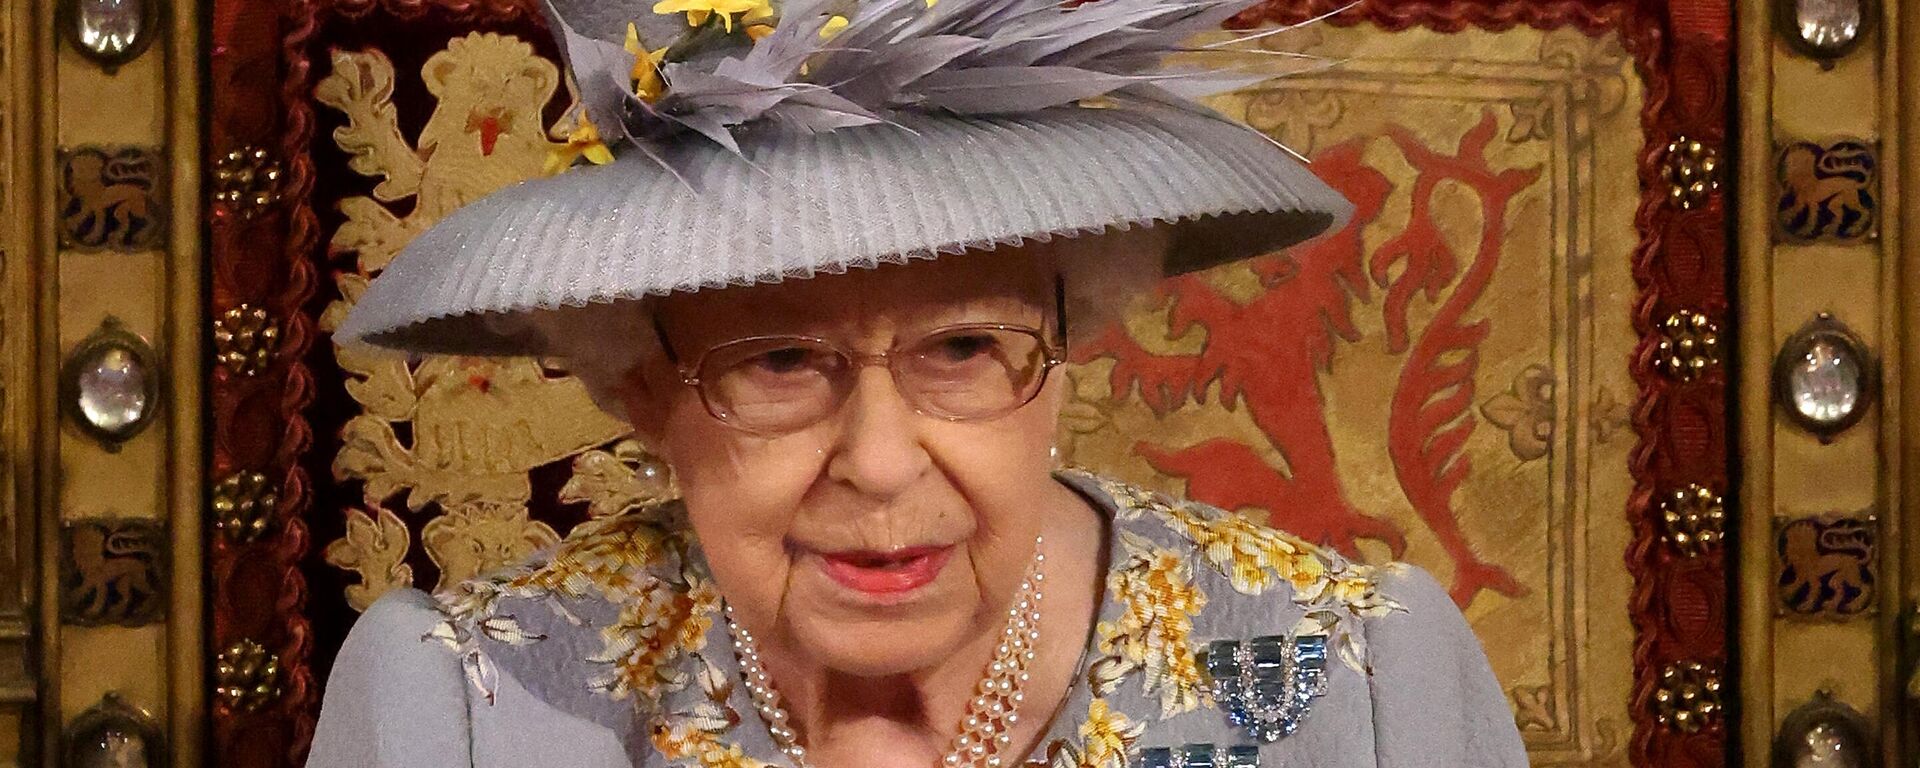 La reina británica Isabel II - Sputnik Mundo, 1920, 17.05.2021